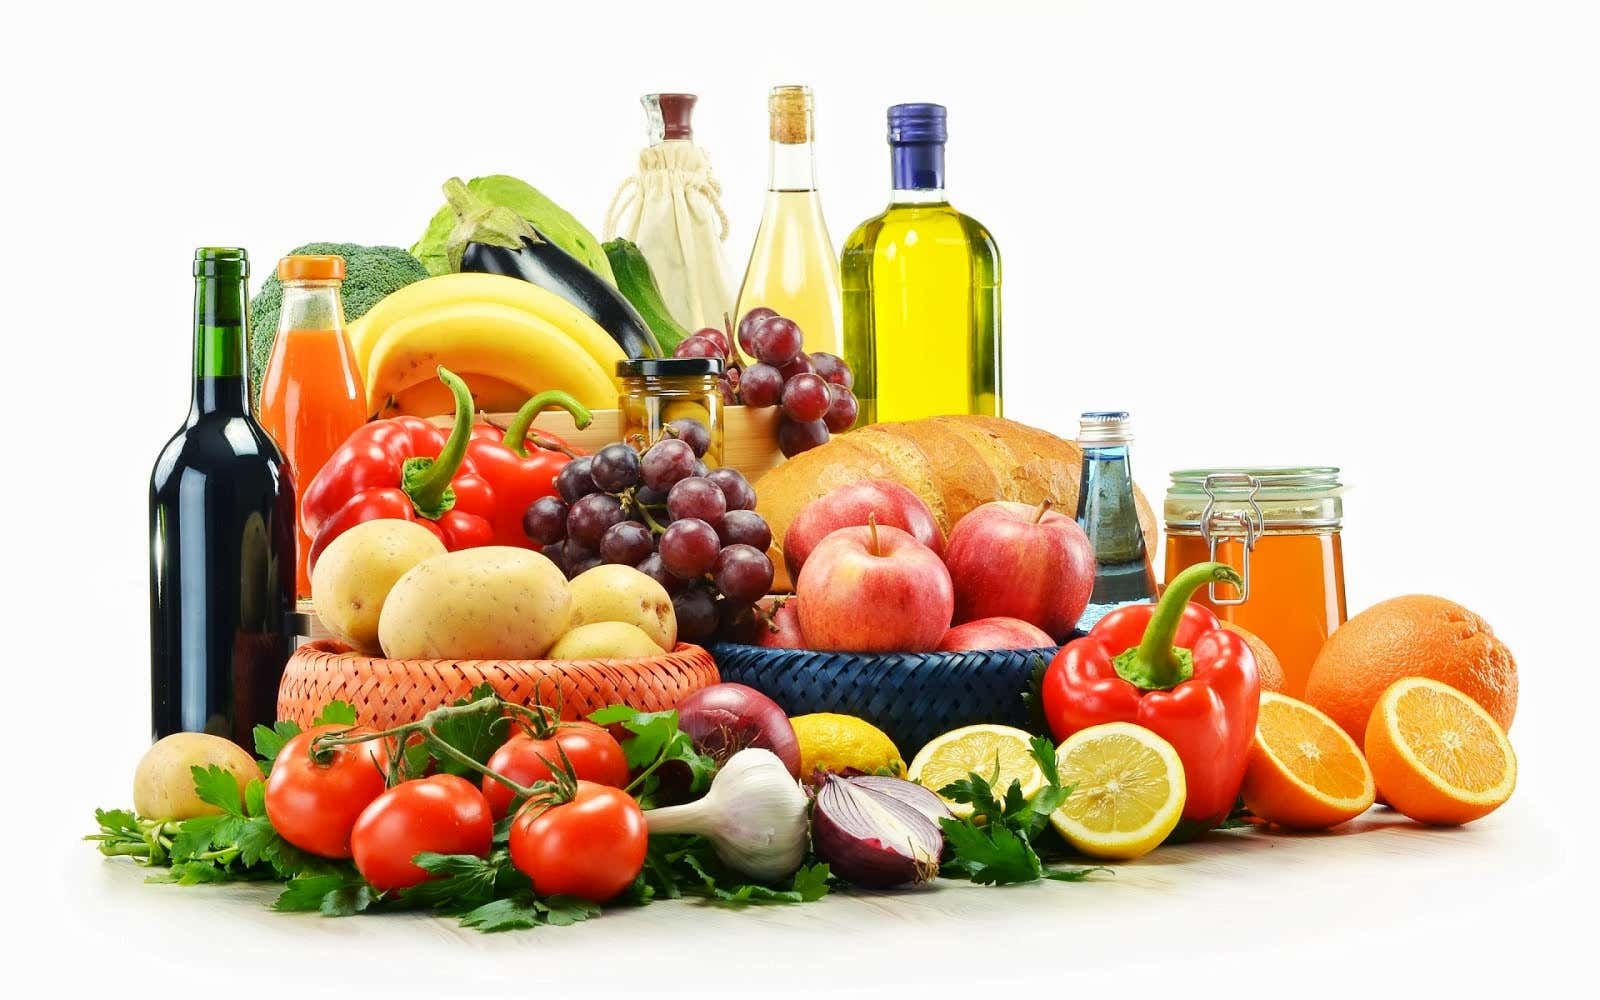 Alimentos de una dieta mediterránea como frutas, aceite de oliva, verduras y cereales